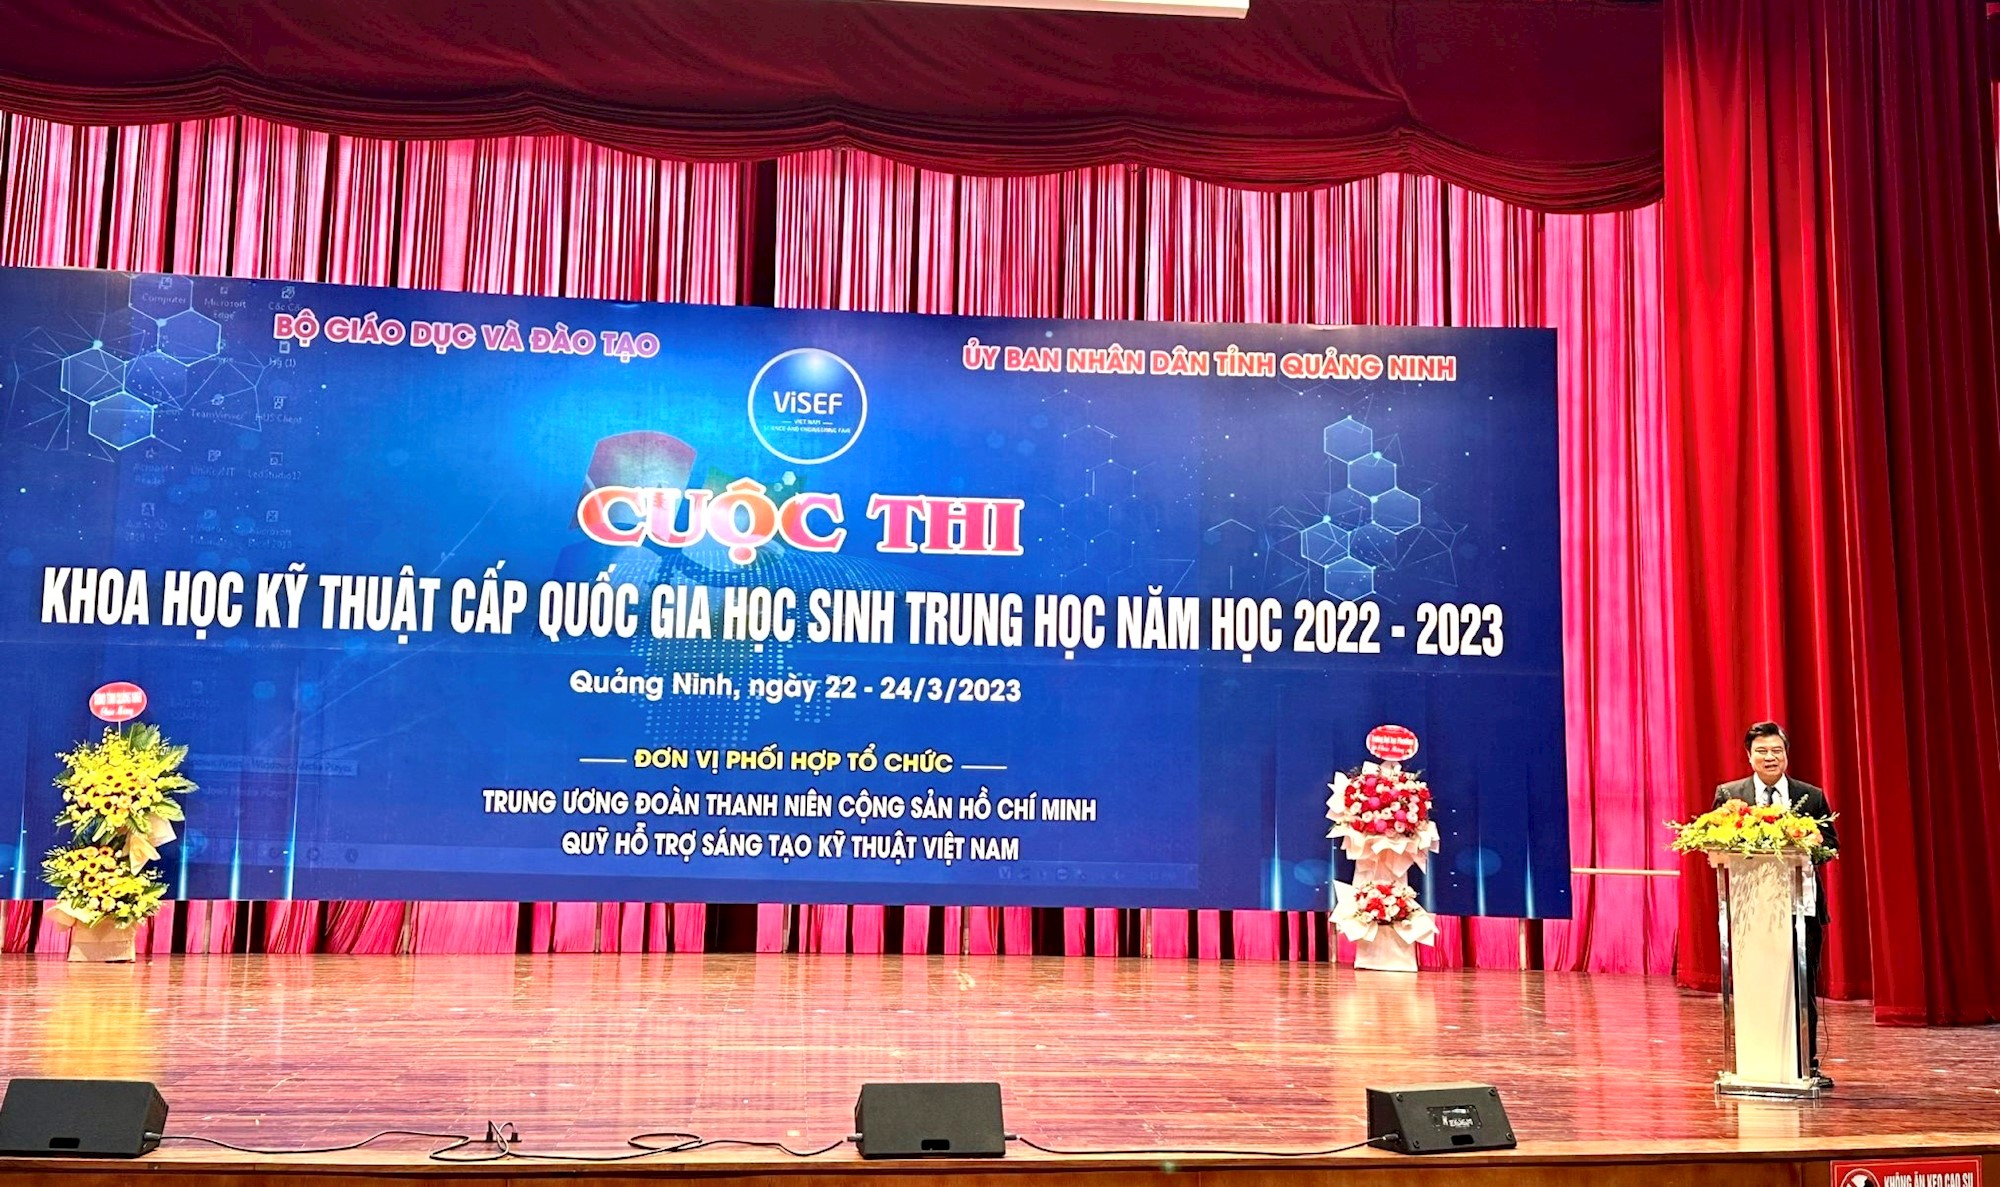 Khai mạc “Cuộc thi khoa học, kỹ thuật cấp quốc gia học sinh trung học lần thứ 11, năm học 2022-2023” tại Quảng Ninh